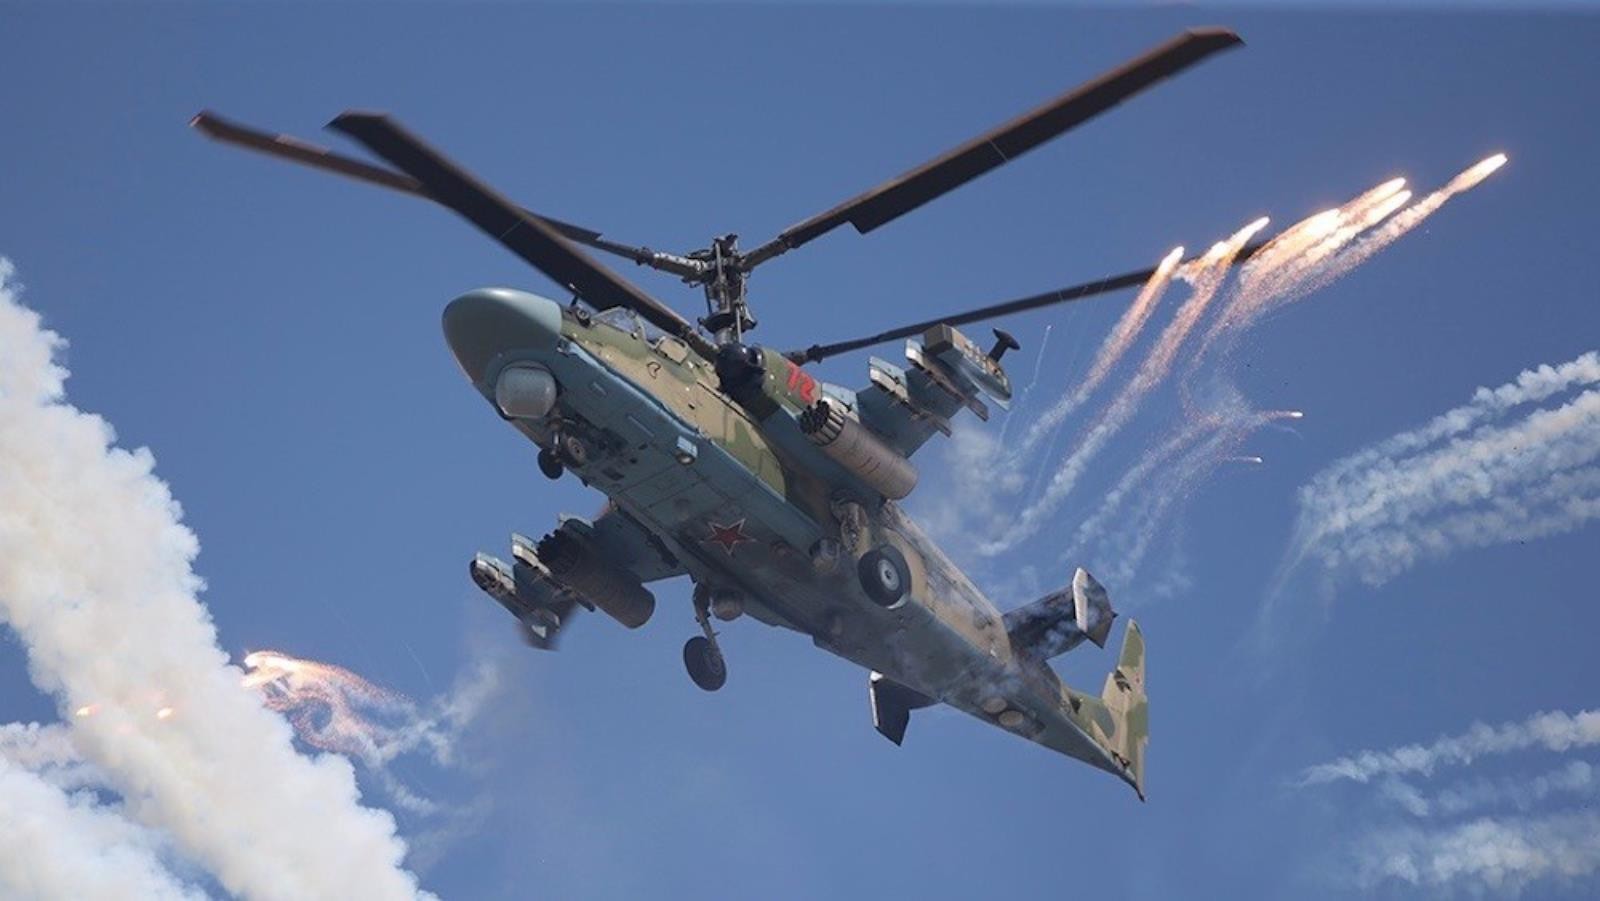 Rosja ulepszyła swój latający czołg. Spójrz na pierwsze zdjęcia Ka-52M